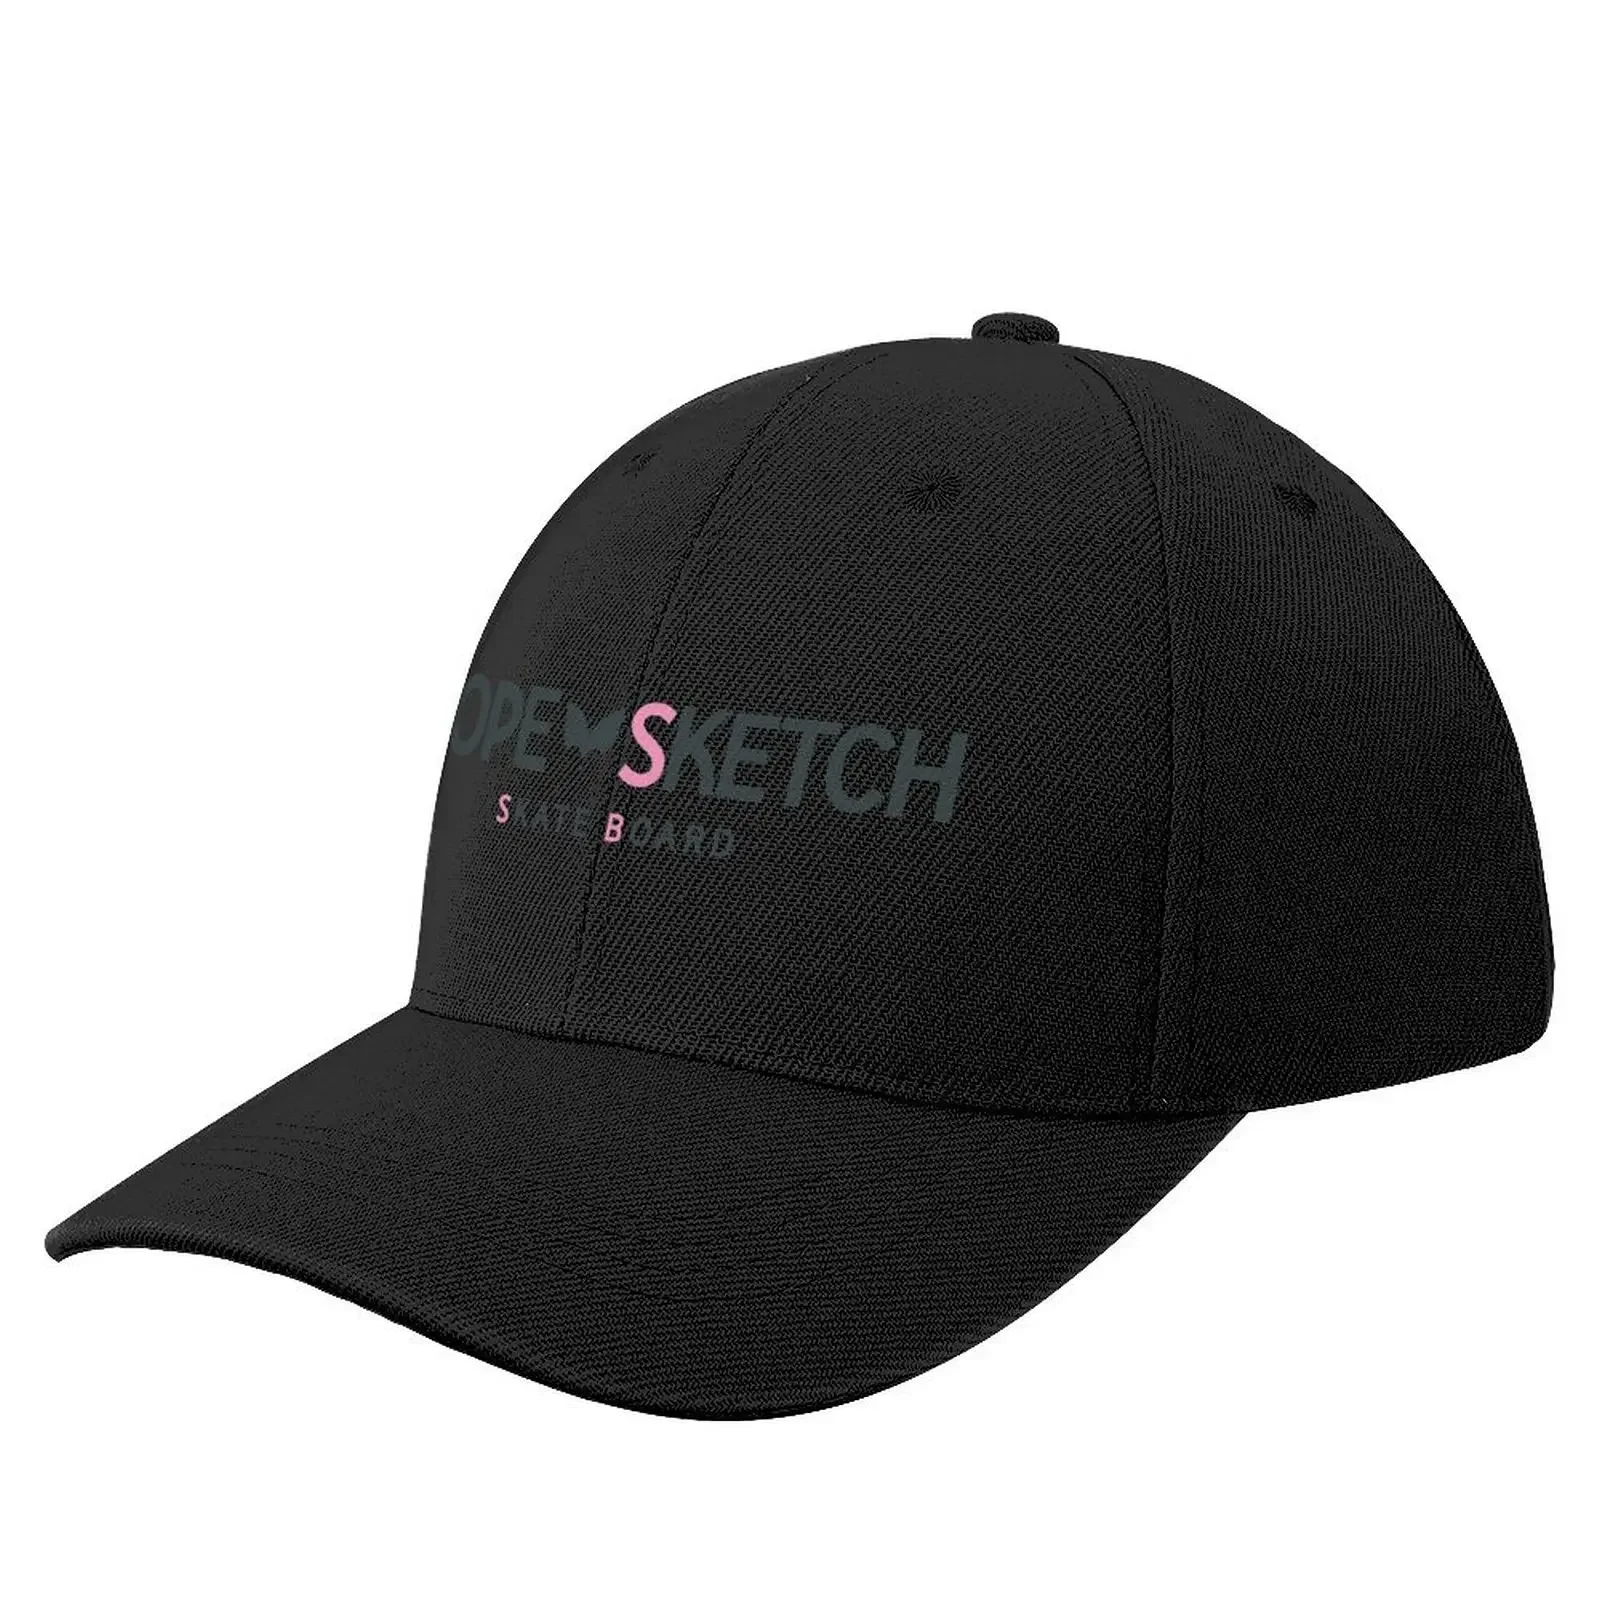 

Dope Sketch Baseball Cap Horse Hat |-F-| Golf Cap Military Tactical Cap Women's Hats Men's